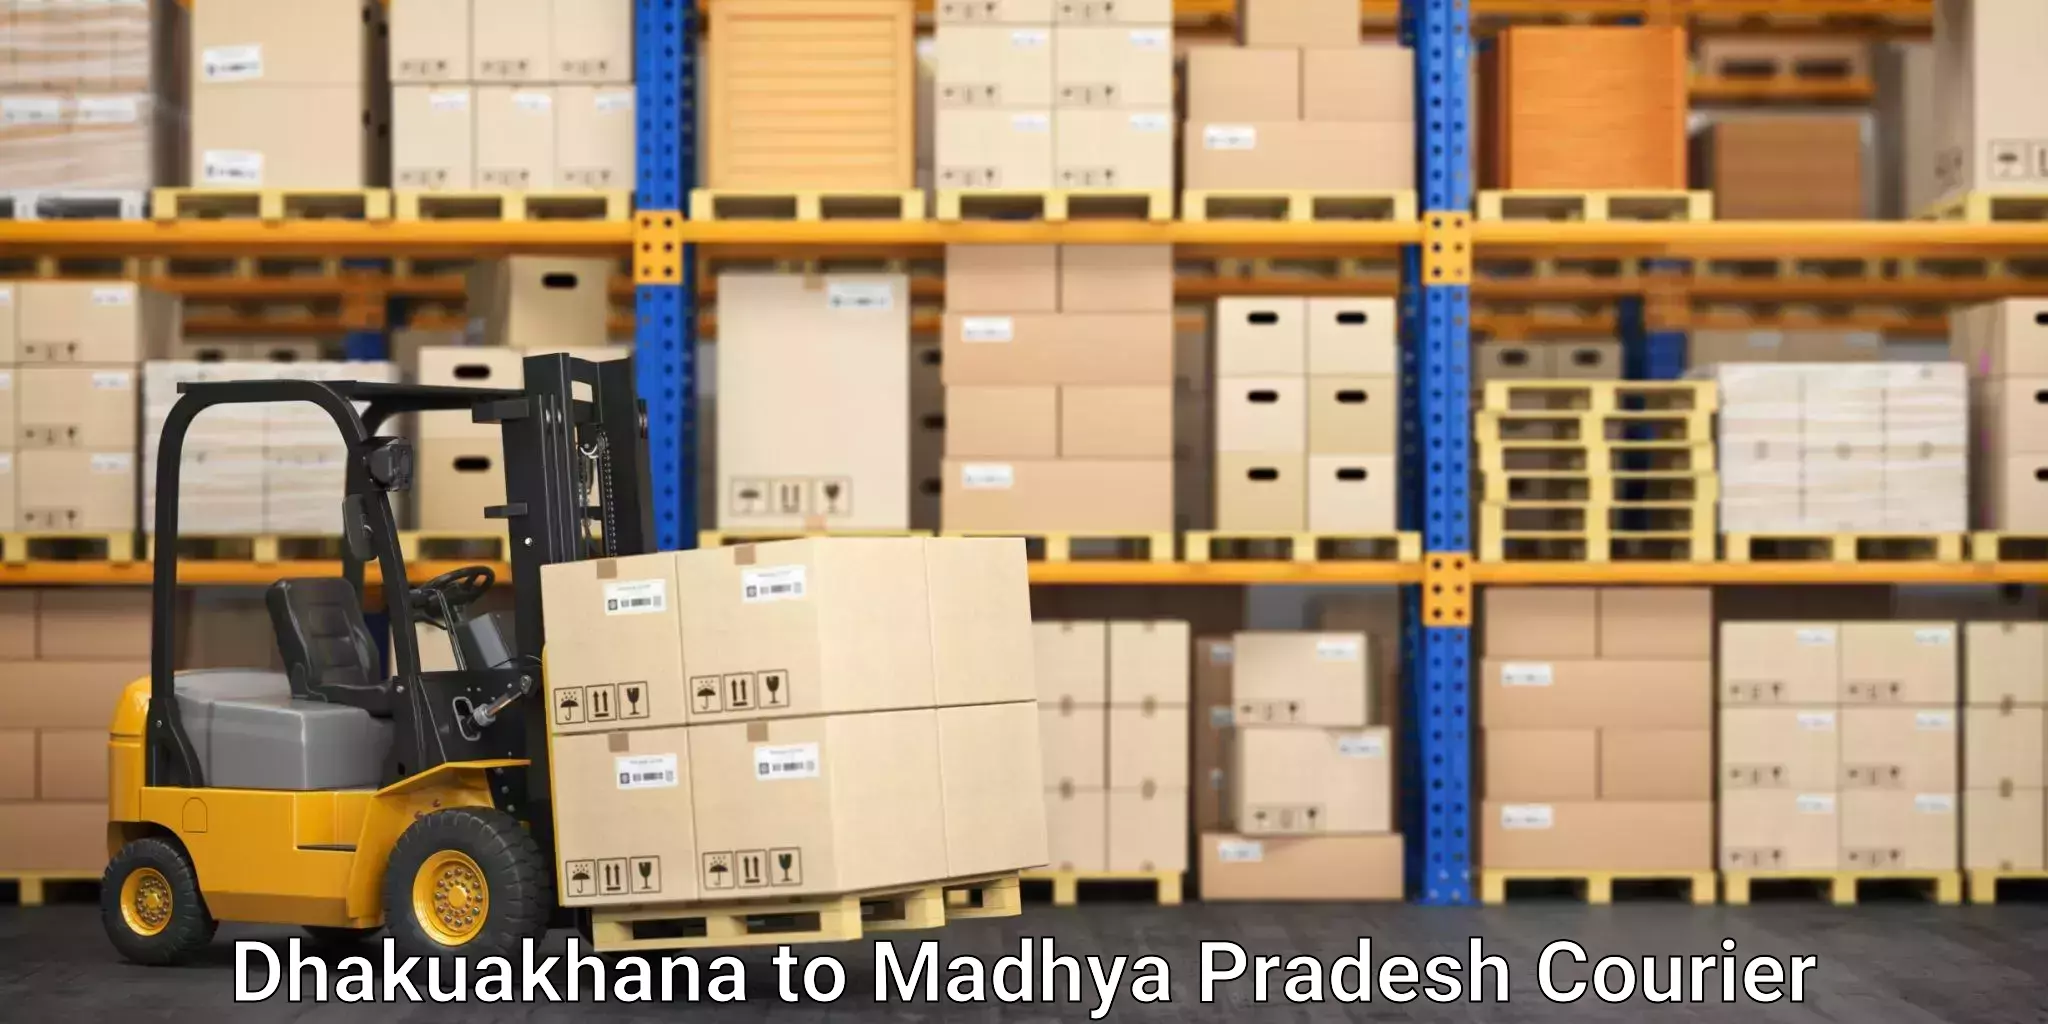 Reliable freight solutions Dhakuakhana to Chandla